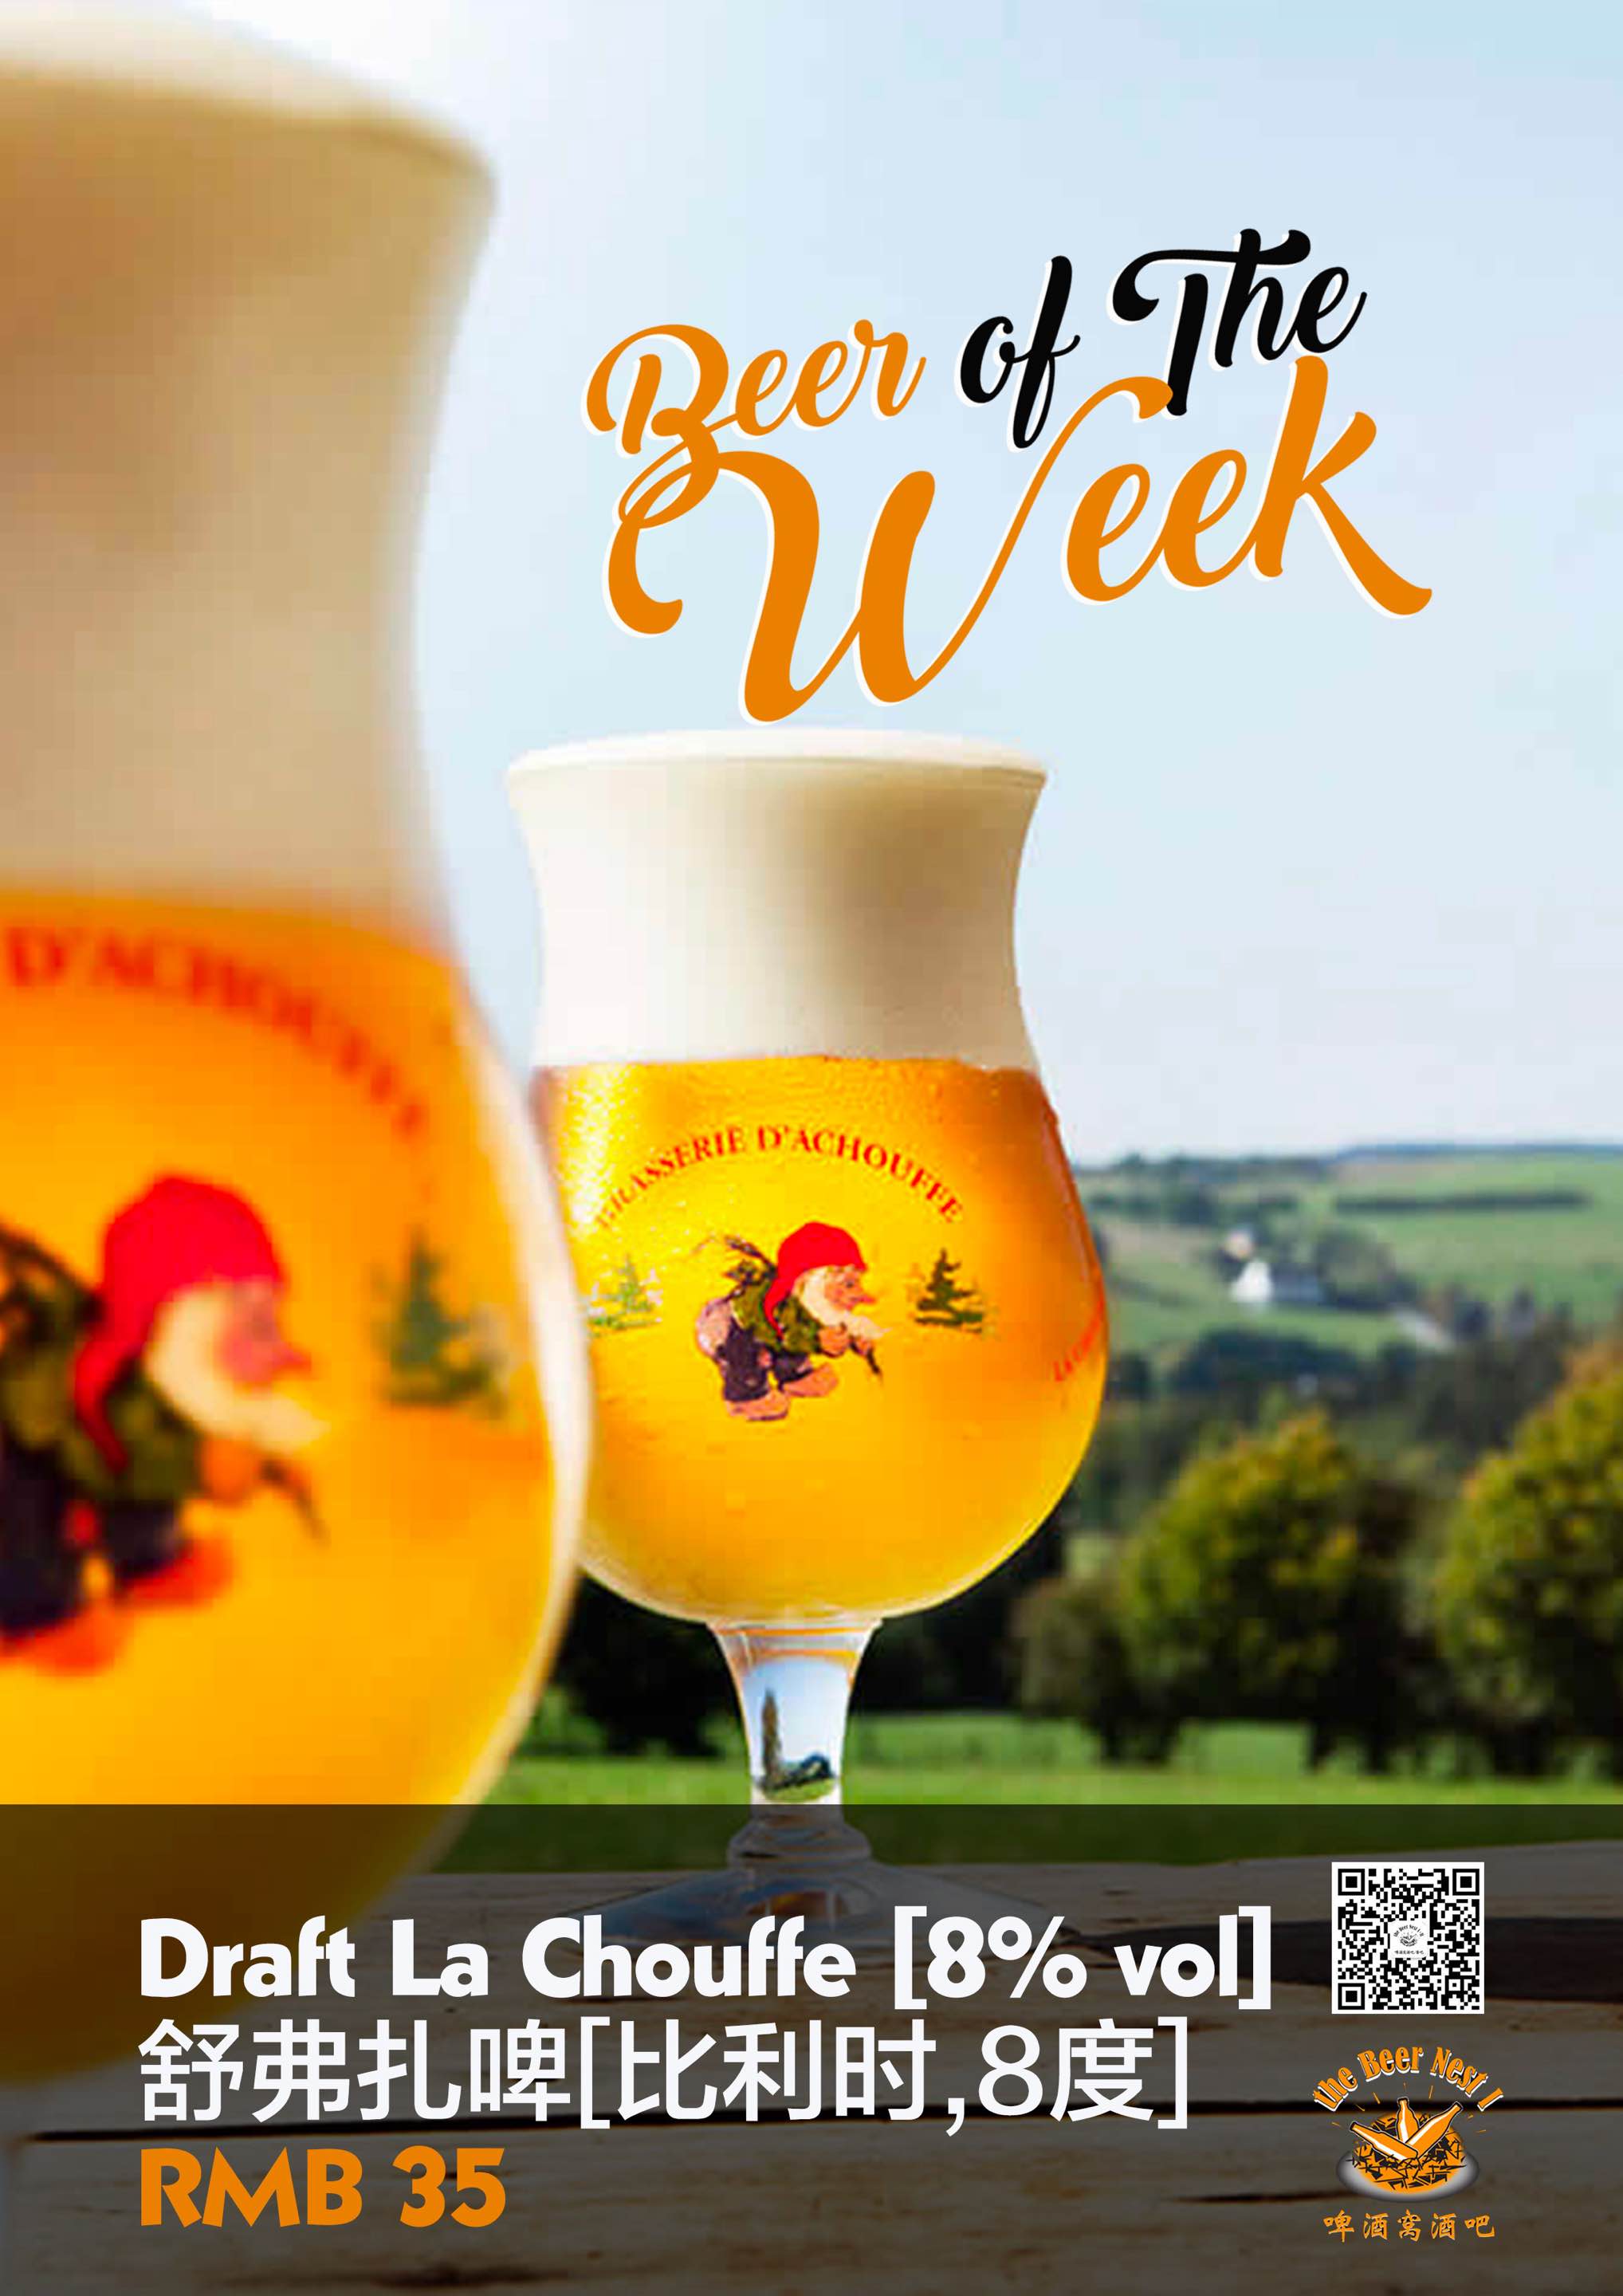 Beer of the Week La Chouffe 35